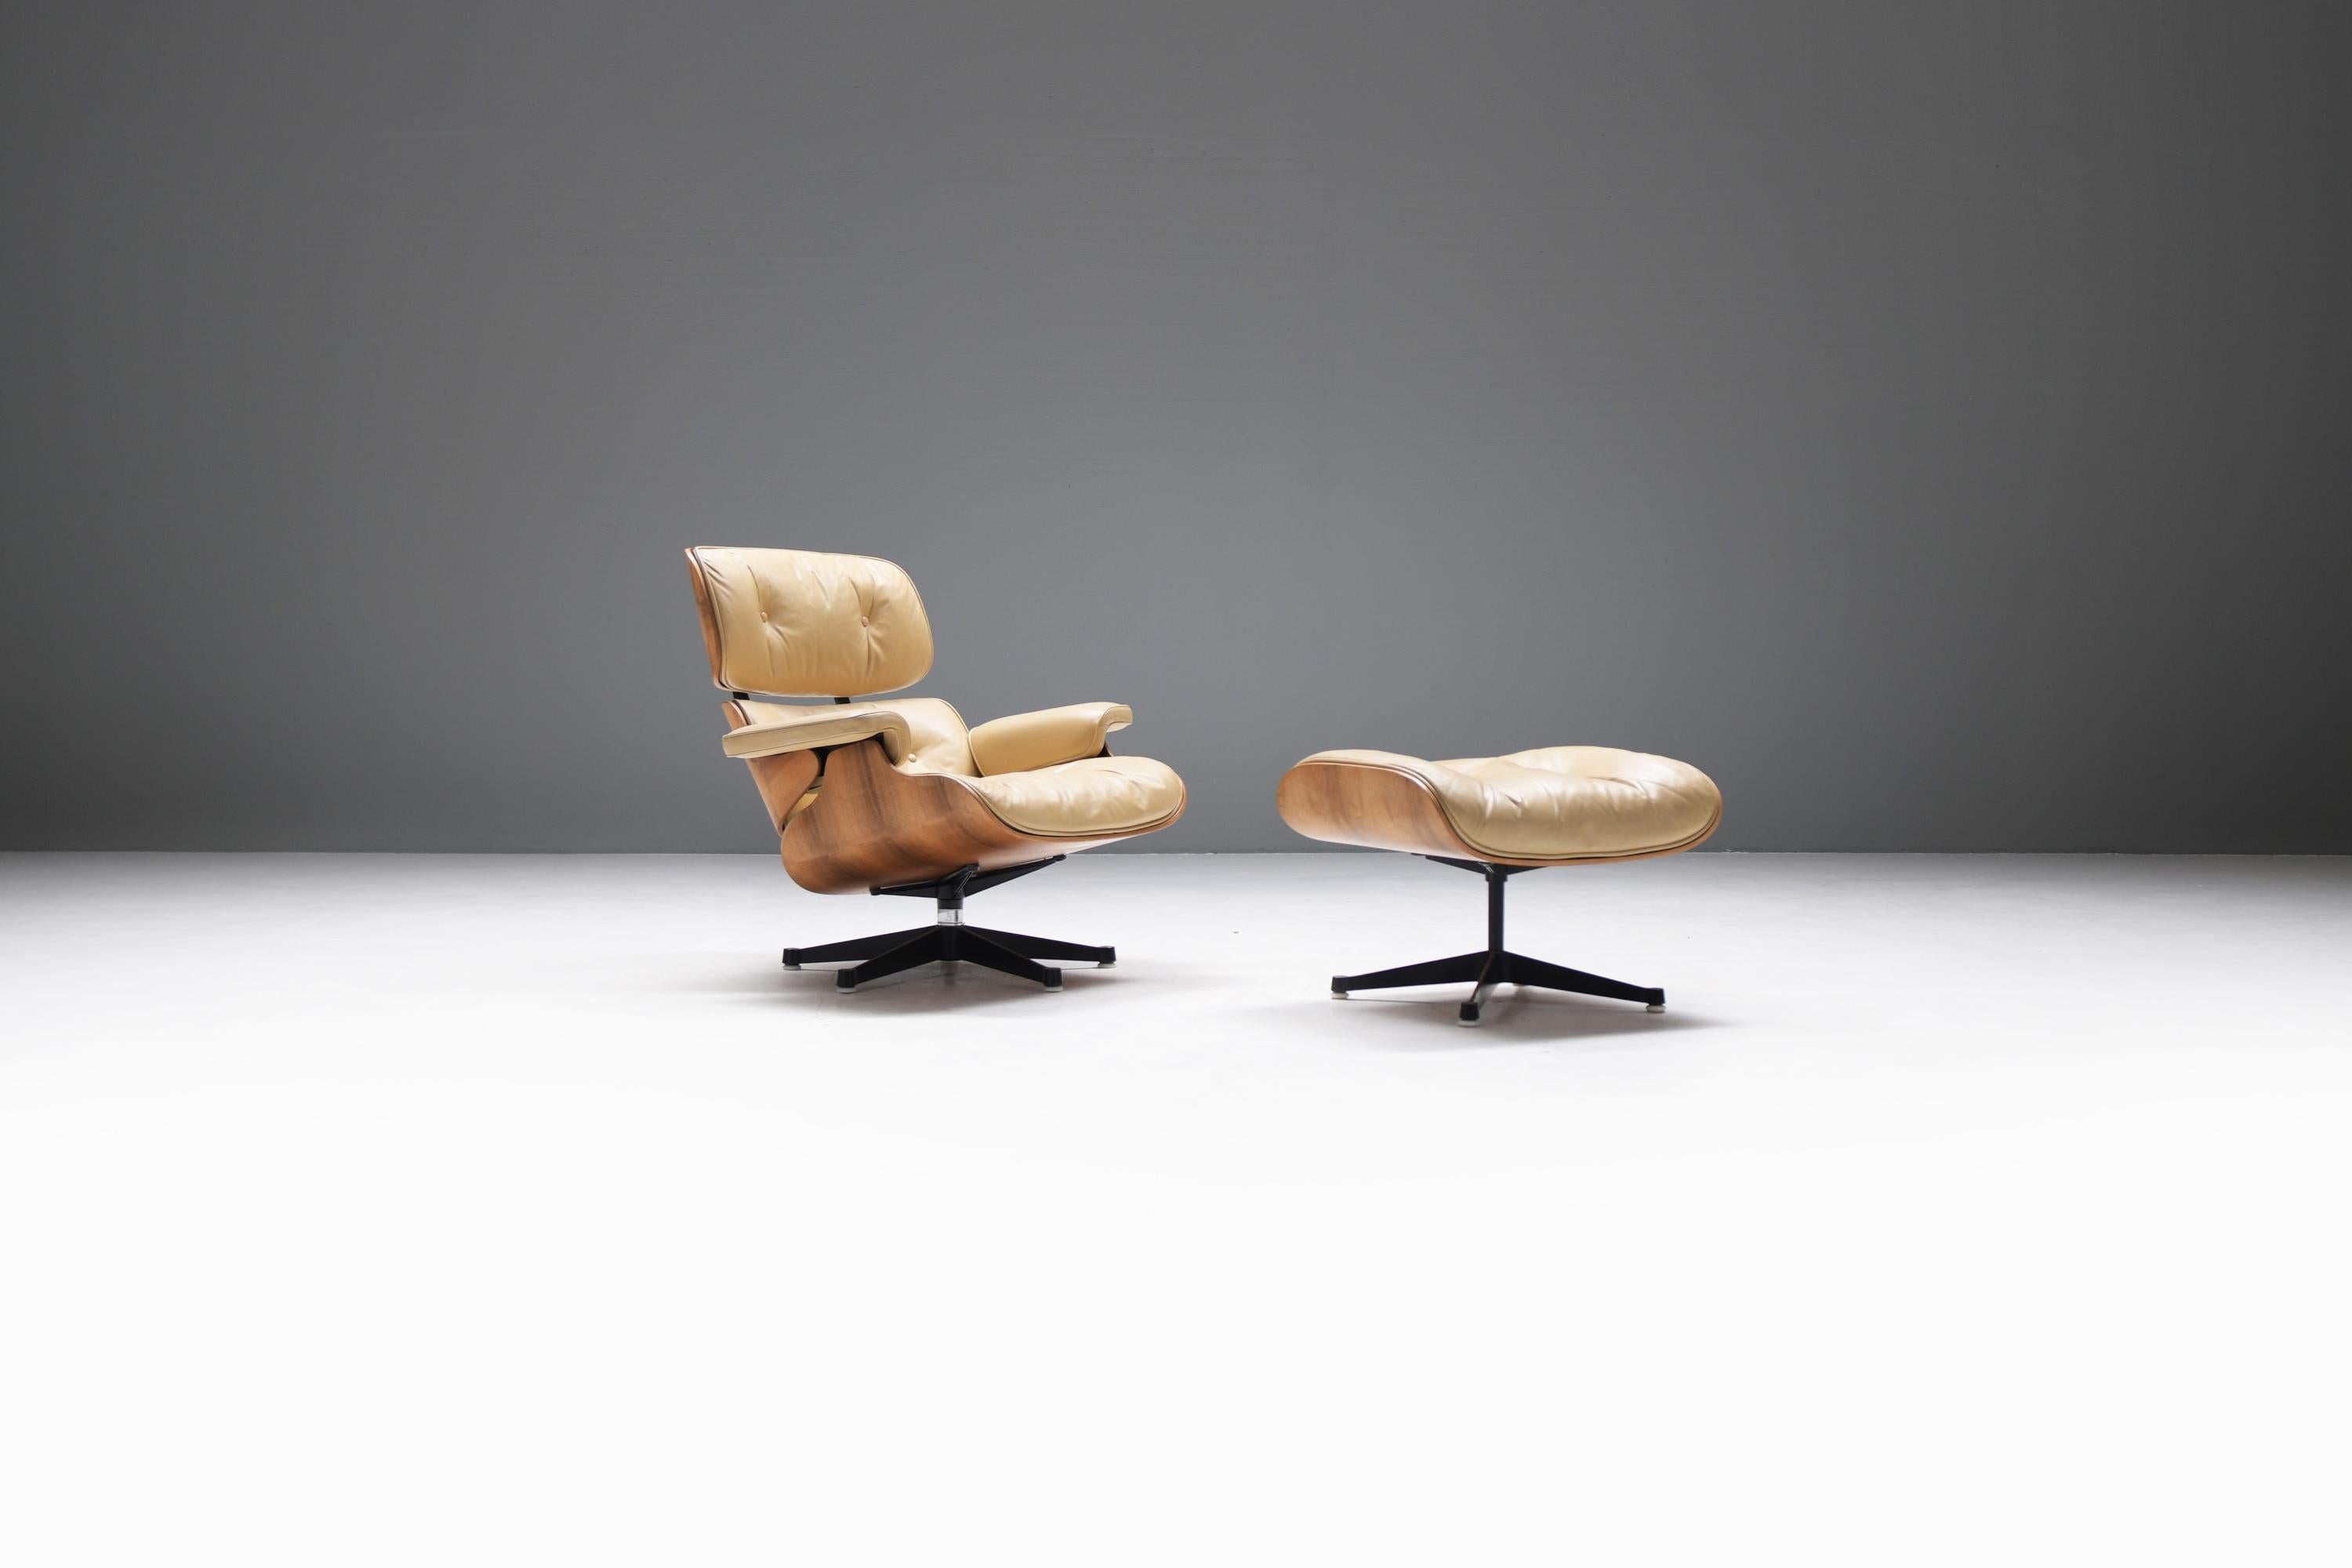 Une trouvaille exceptionnelle ! Chaise longue et ottoman Eames élégants et originaux.  Une combinaison magnifique et très rare : palissandre brésilien et cuir beige/crème.  Encore 100% d'origine.  Pièce de collection !
Produit entre 1972 et 1989 par